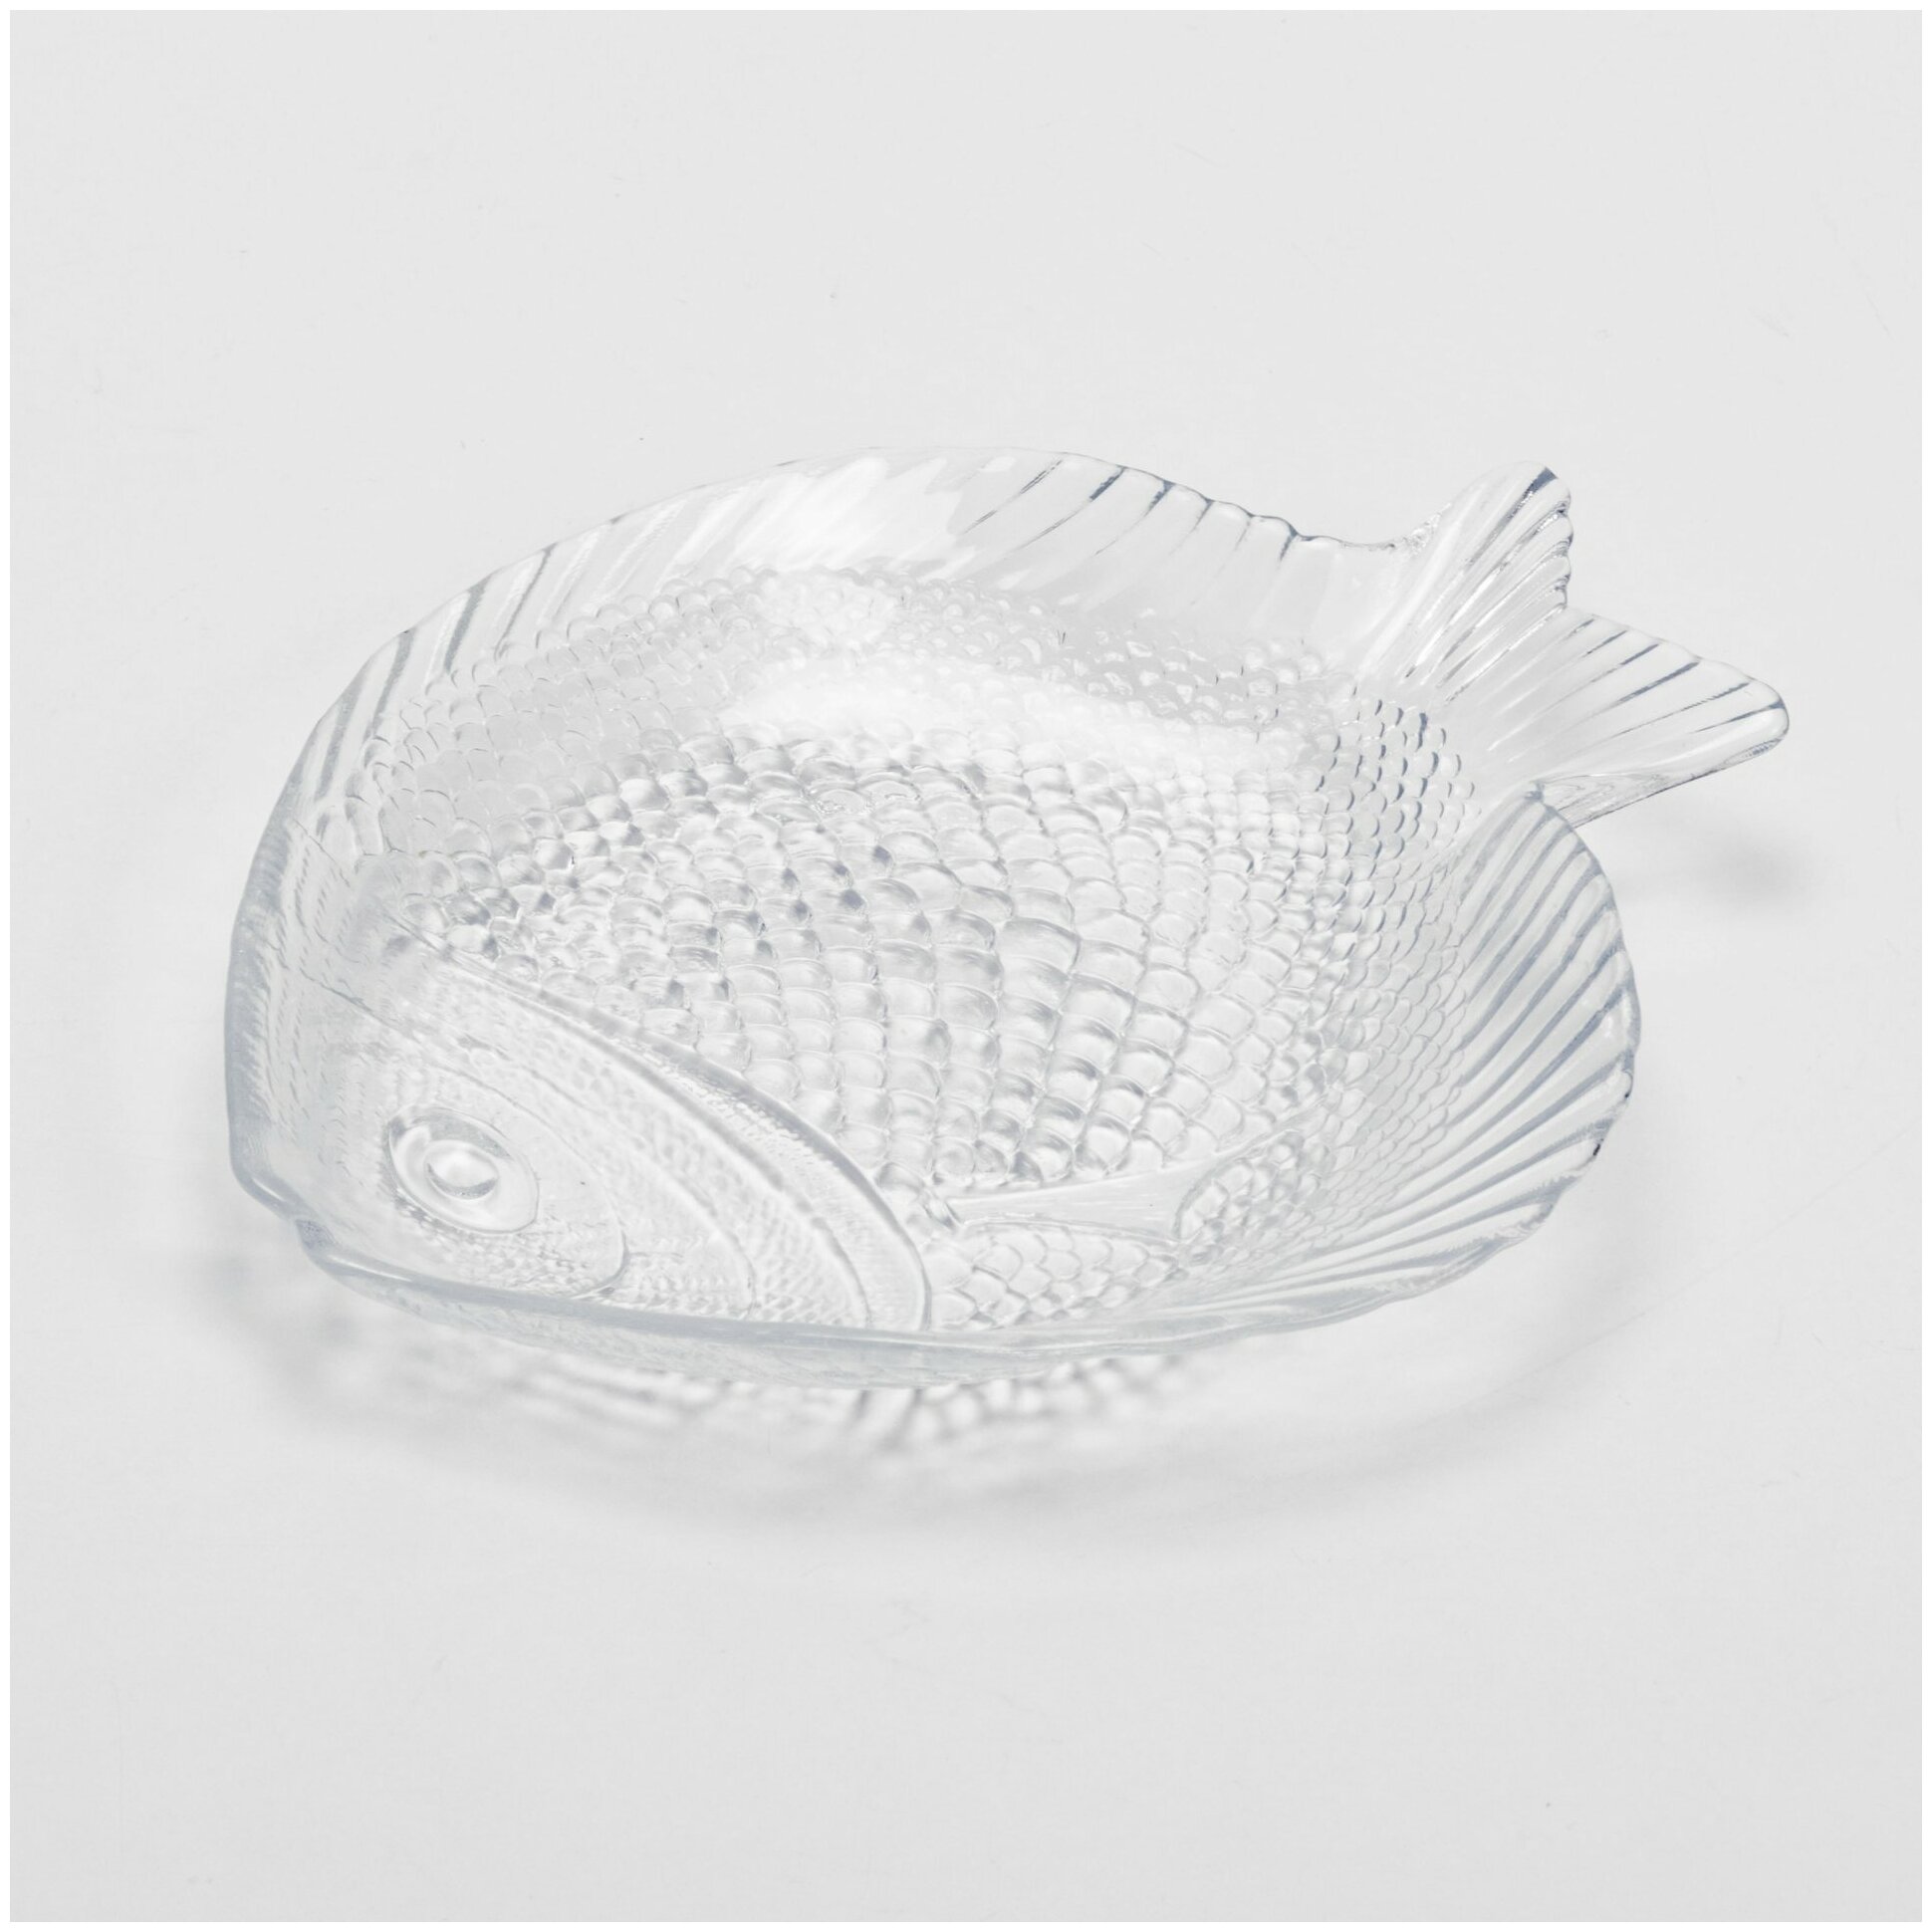 Блюдо "Рыба", стекло, Китай, 2000-2015 гг.